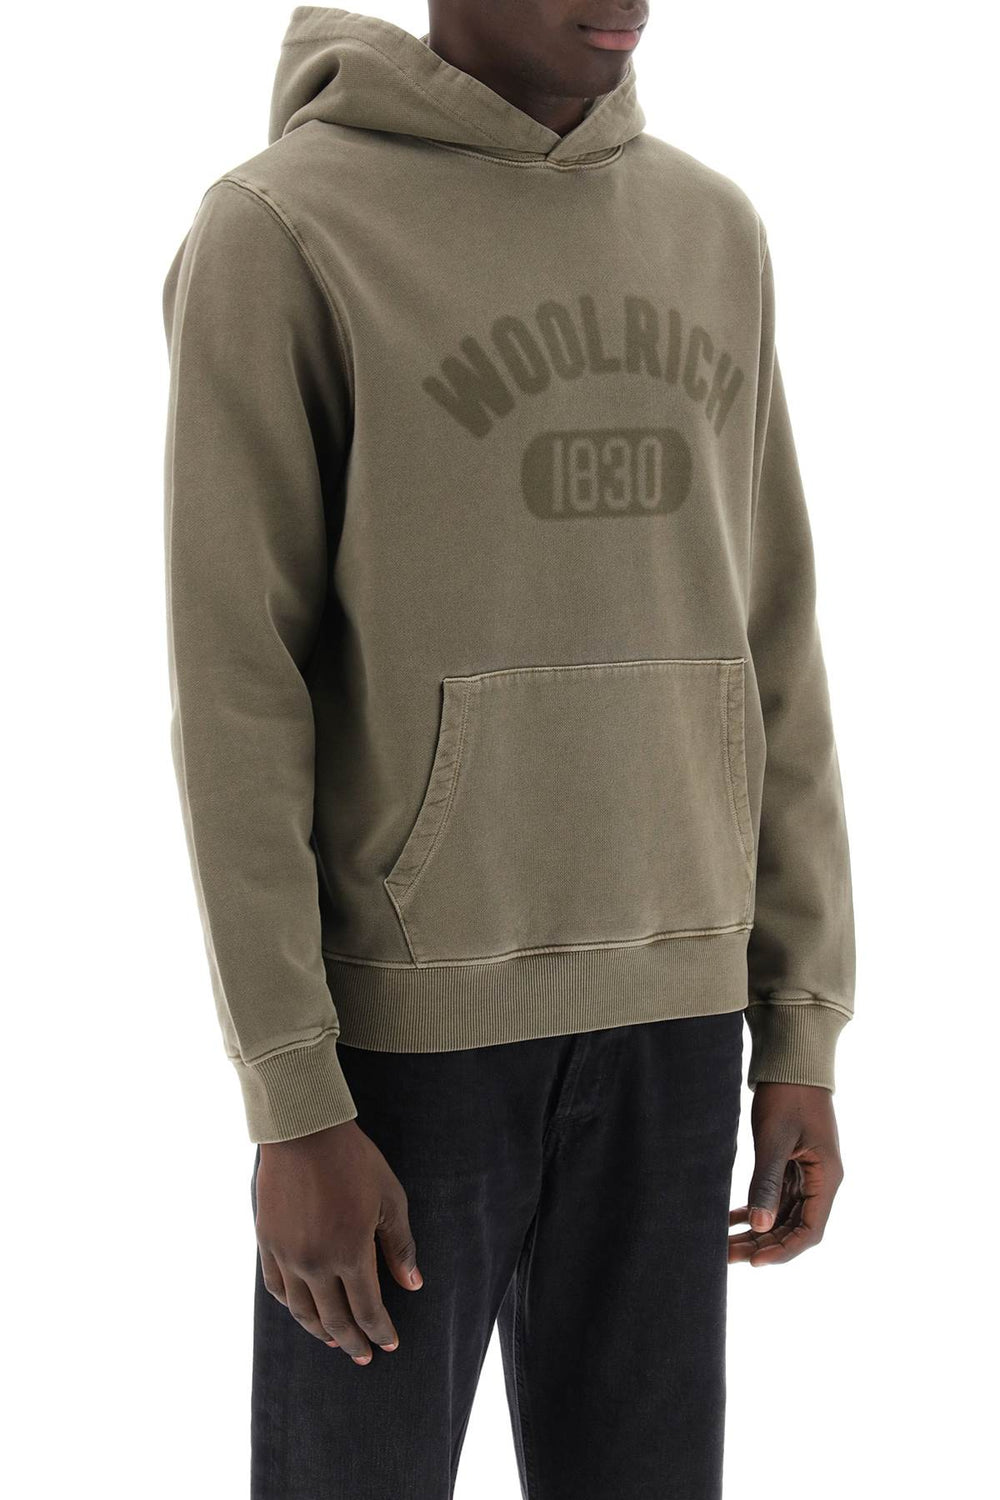 vintage-look hoodie with logo print and-1